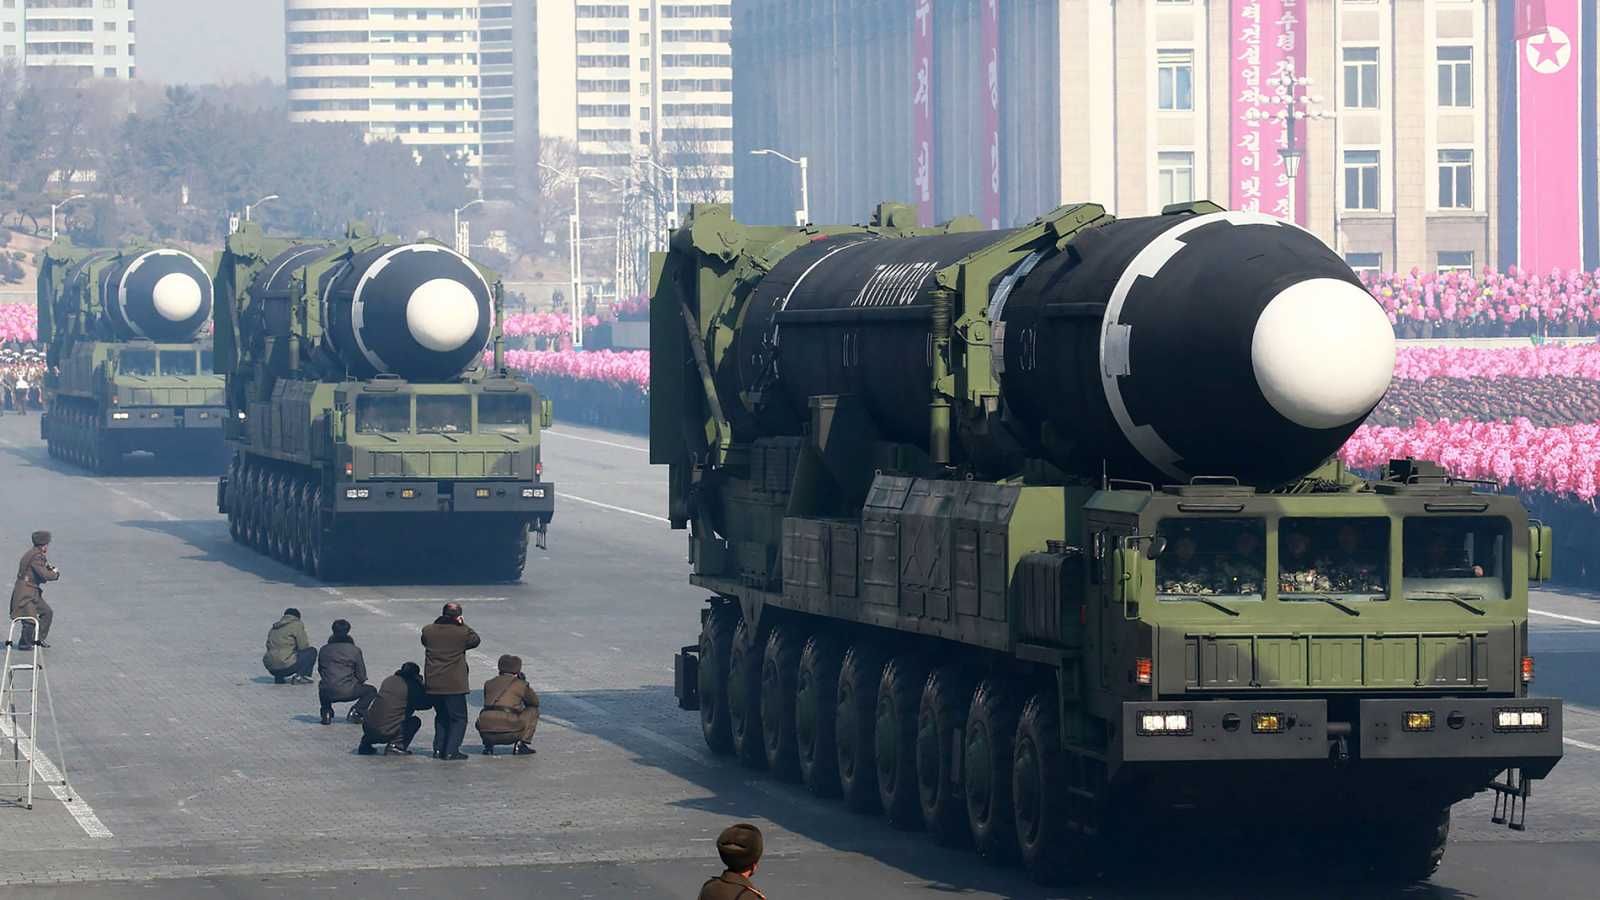 Corea del Norte quiere que se alivien las sanciones para reanudar las conversaciones con EE.UU.